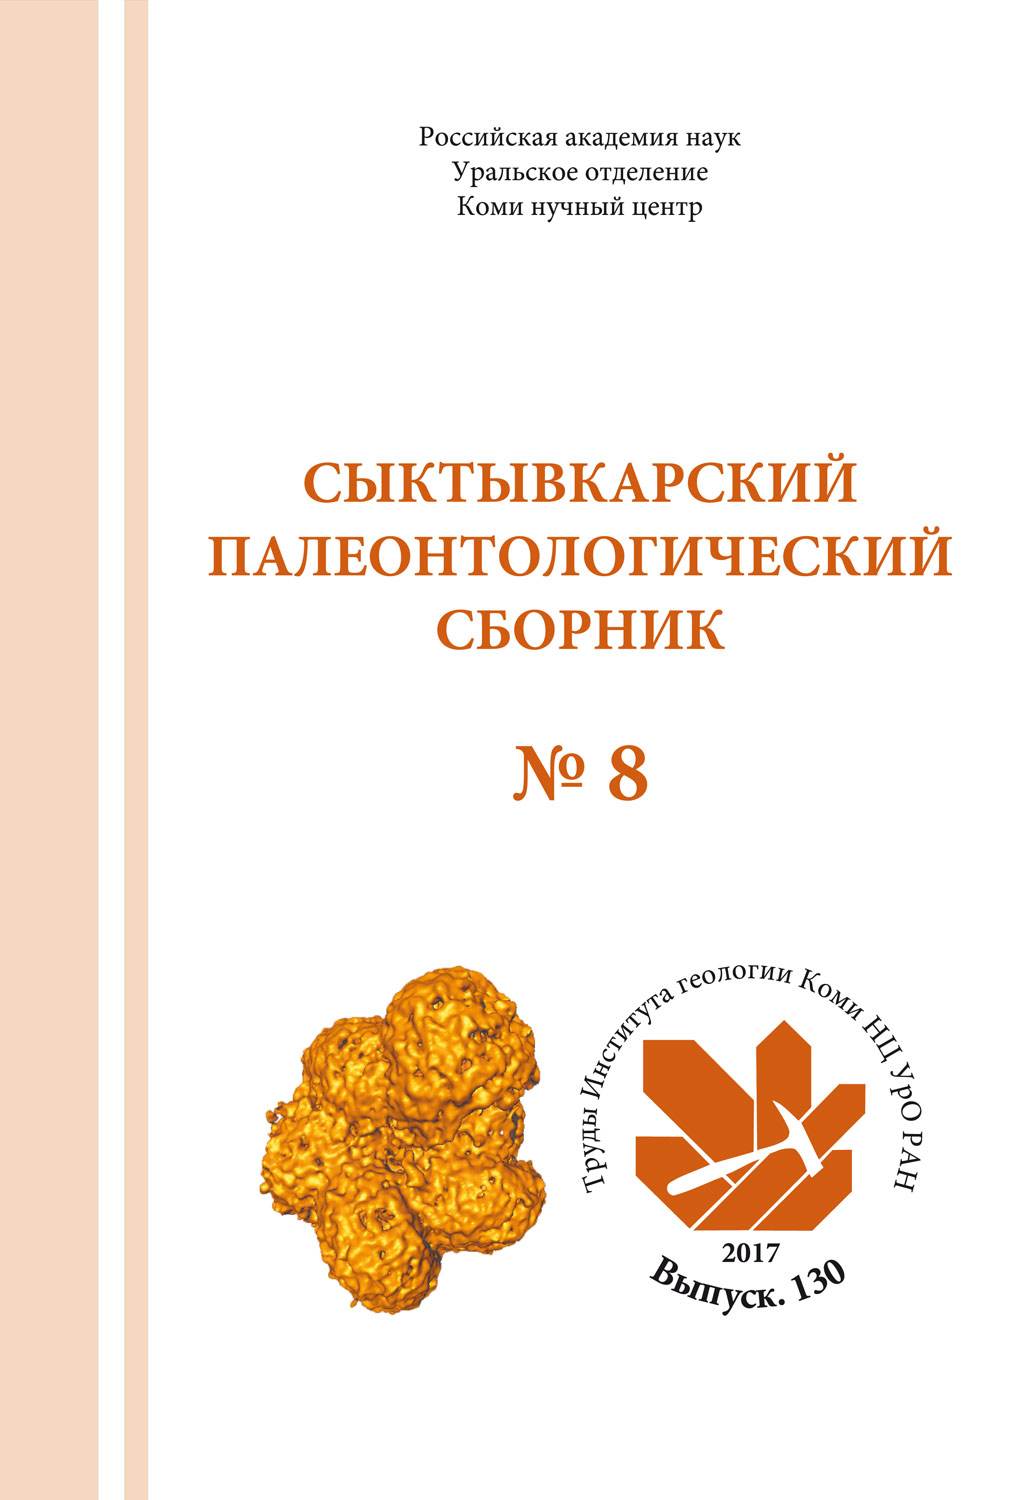 Cыктывкарский палеонтологический сборник № 8